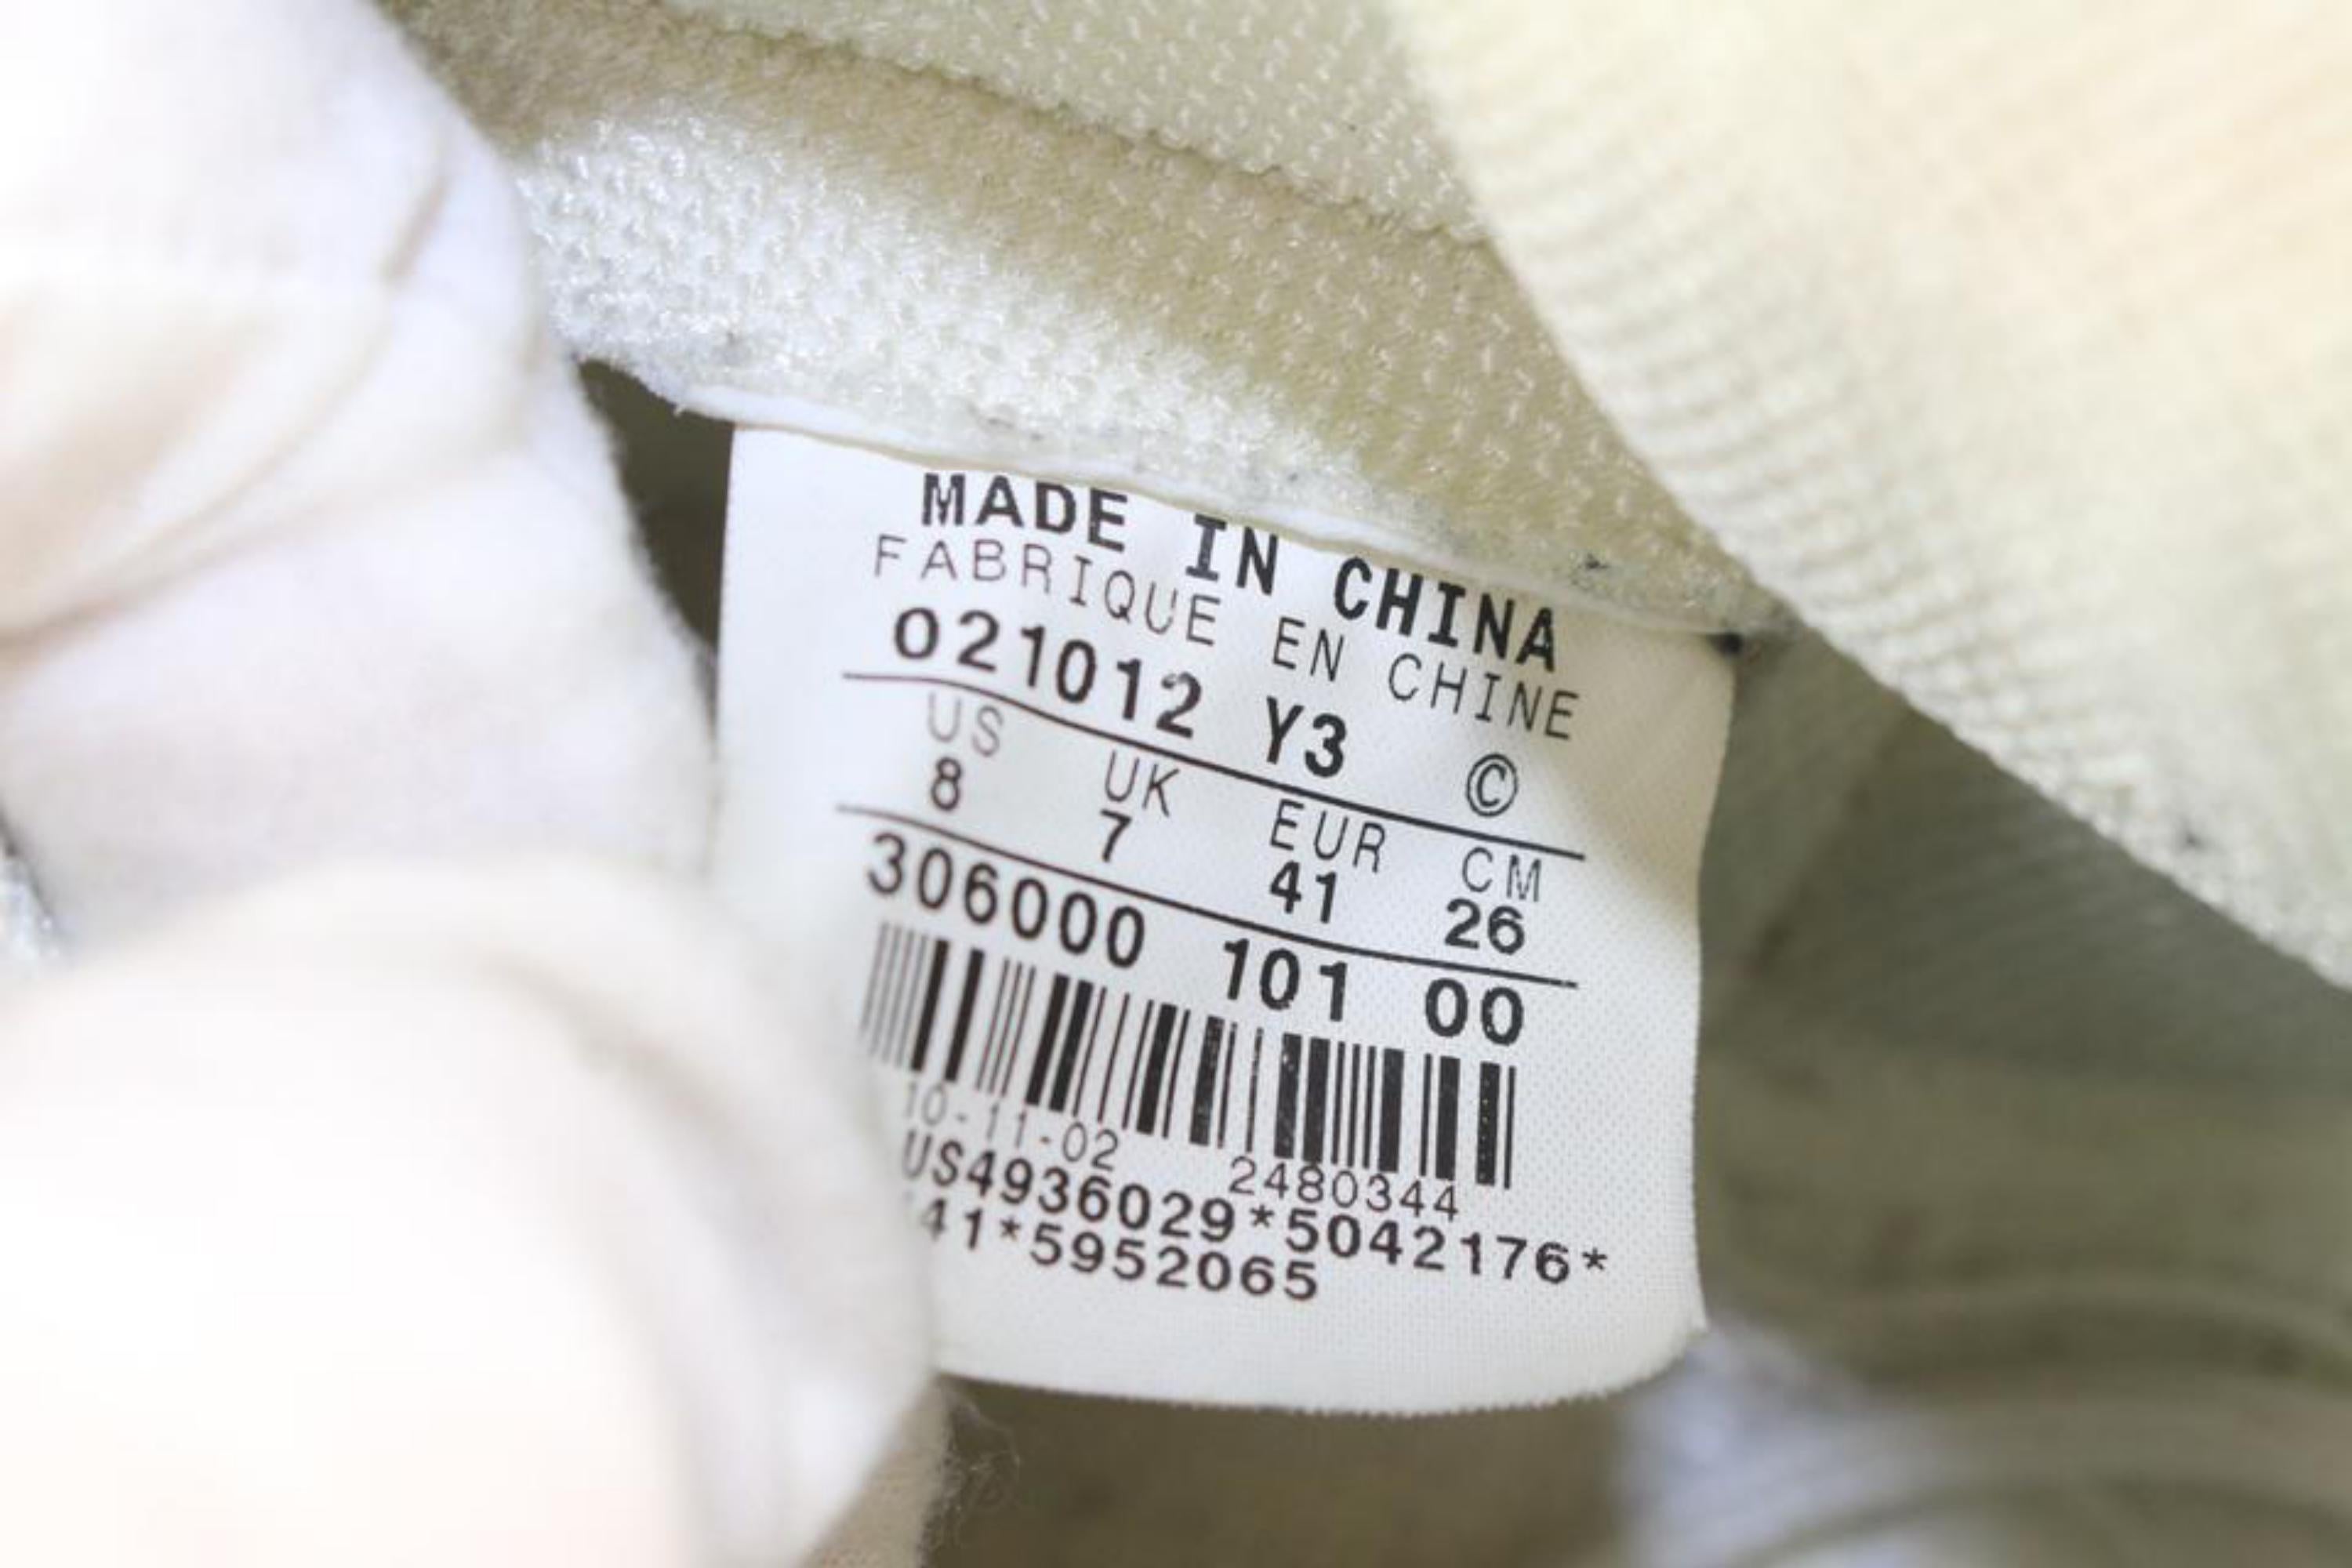 Nike 2002 Men's 8 US White x Chrome Air Jordan 1 I Sneaker 306000 101 00
Date Code/Serial Number: 021012-Y3
Made In: China 
Measurements: Length: 11 